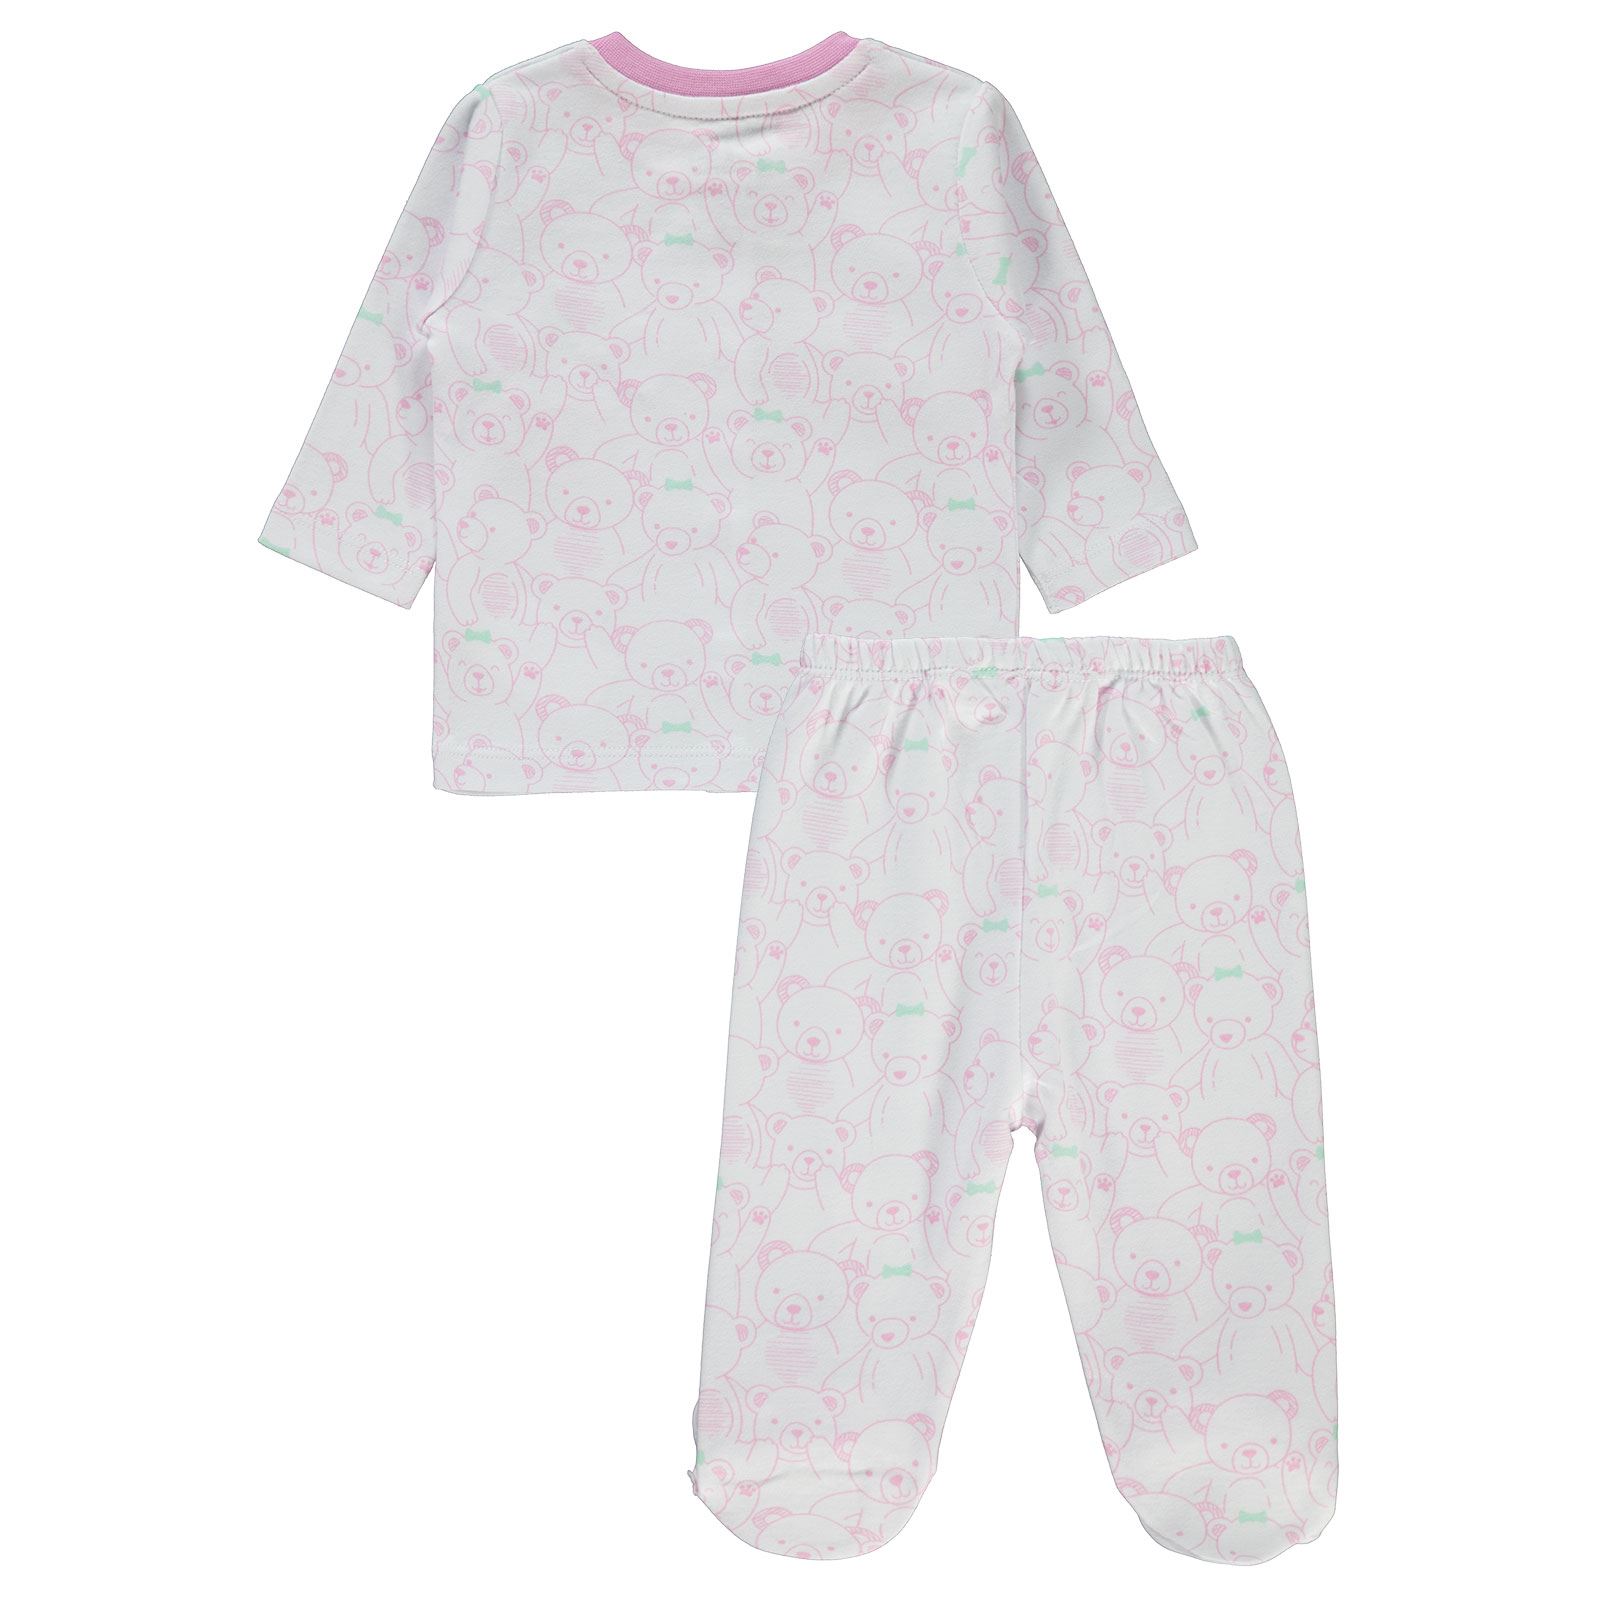 Kujju Kız Bebek Pijama Takımı 0-6 Ay Pembe